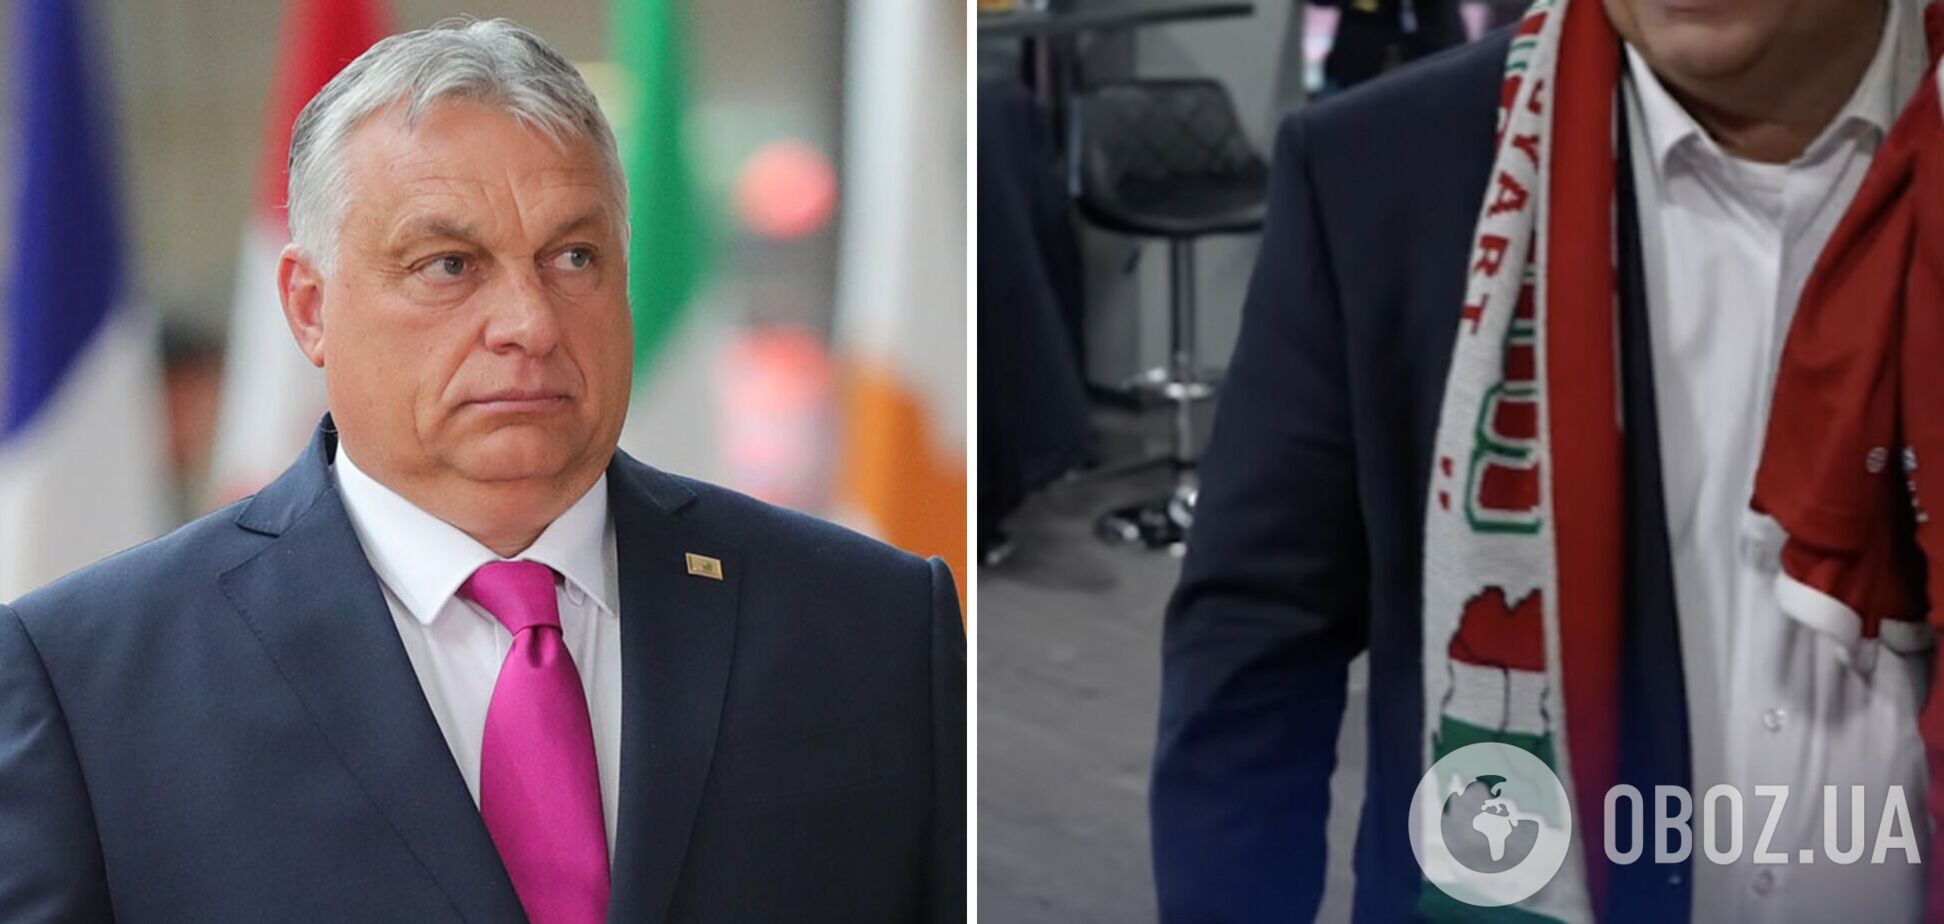 Орбан попал в громкий скандал из-за шарфа с изображением 'Великой Венгрии', в состав которой 'включили' части Румынии и Украины. Фото